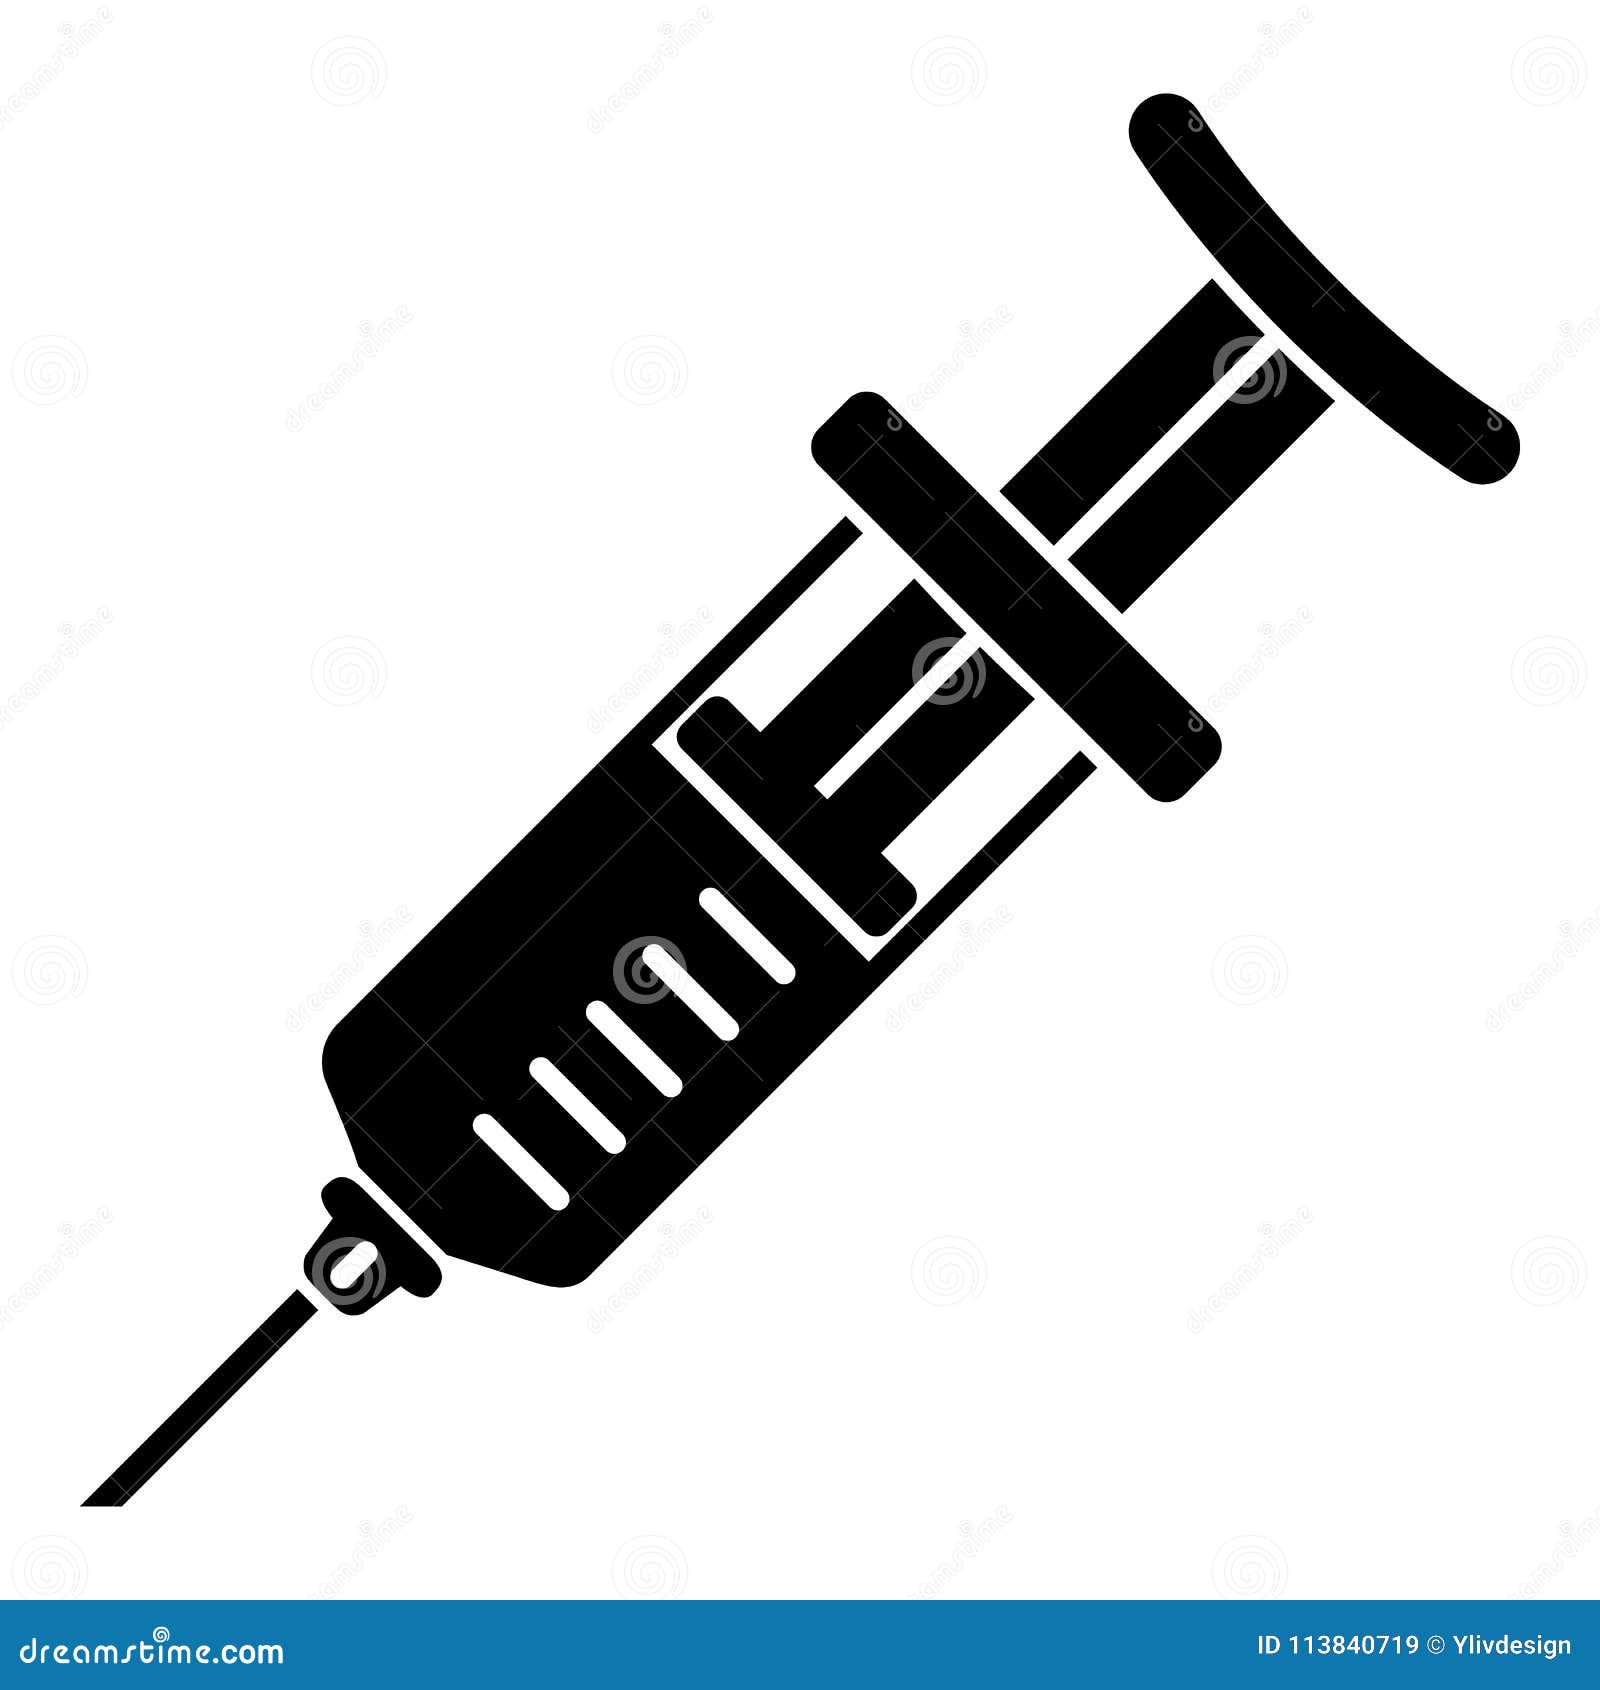 immunization syringe icon, simple style